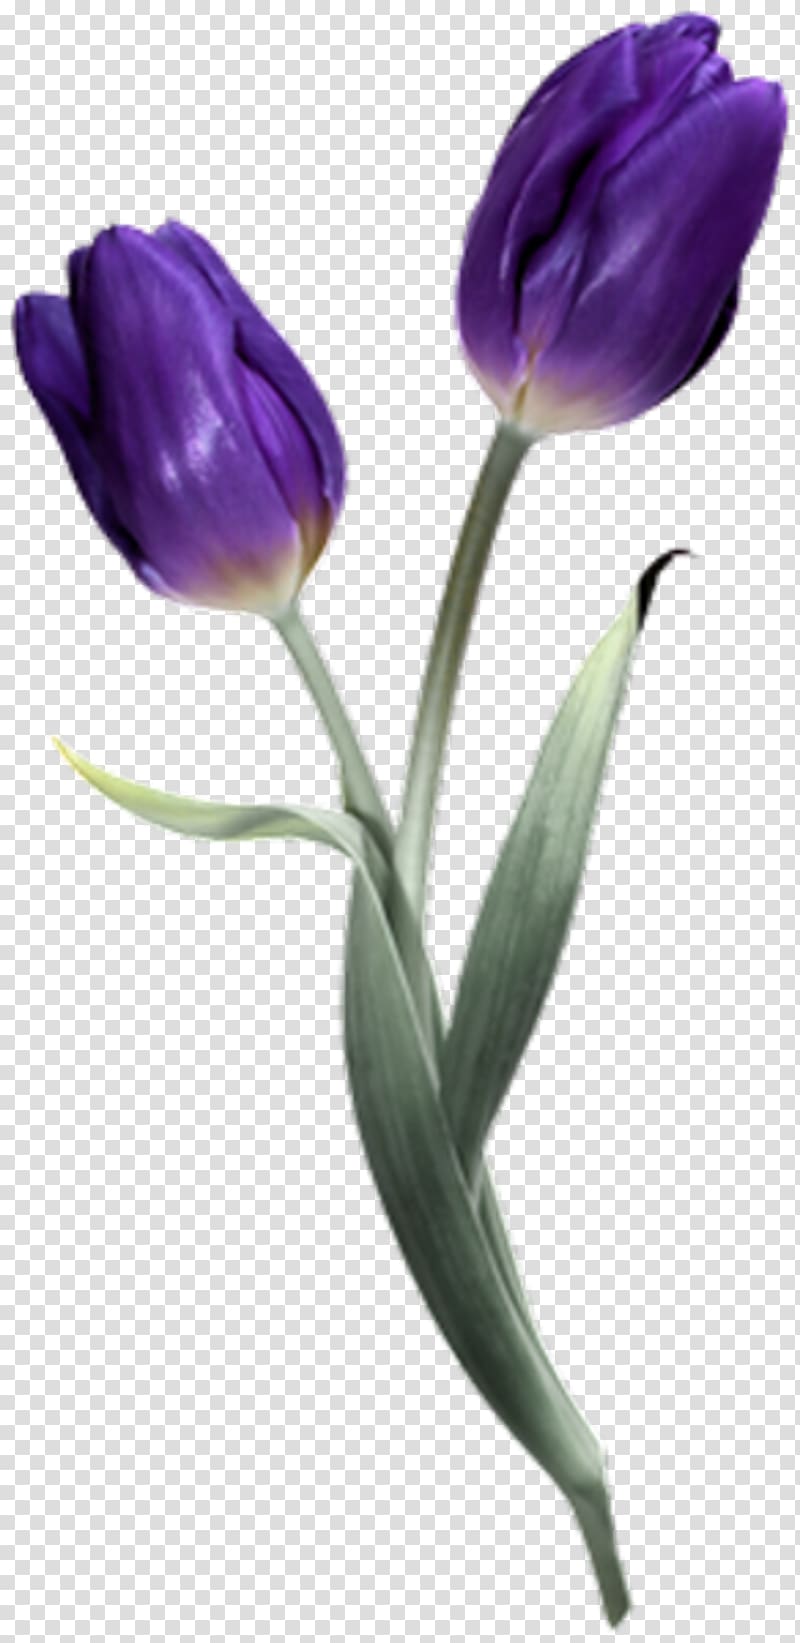 Tulip Flower Scape PaintShop Pro, tulip transparent background PNG clipart